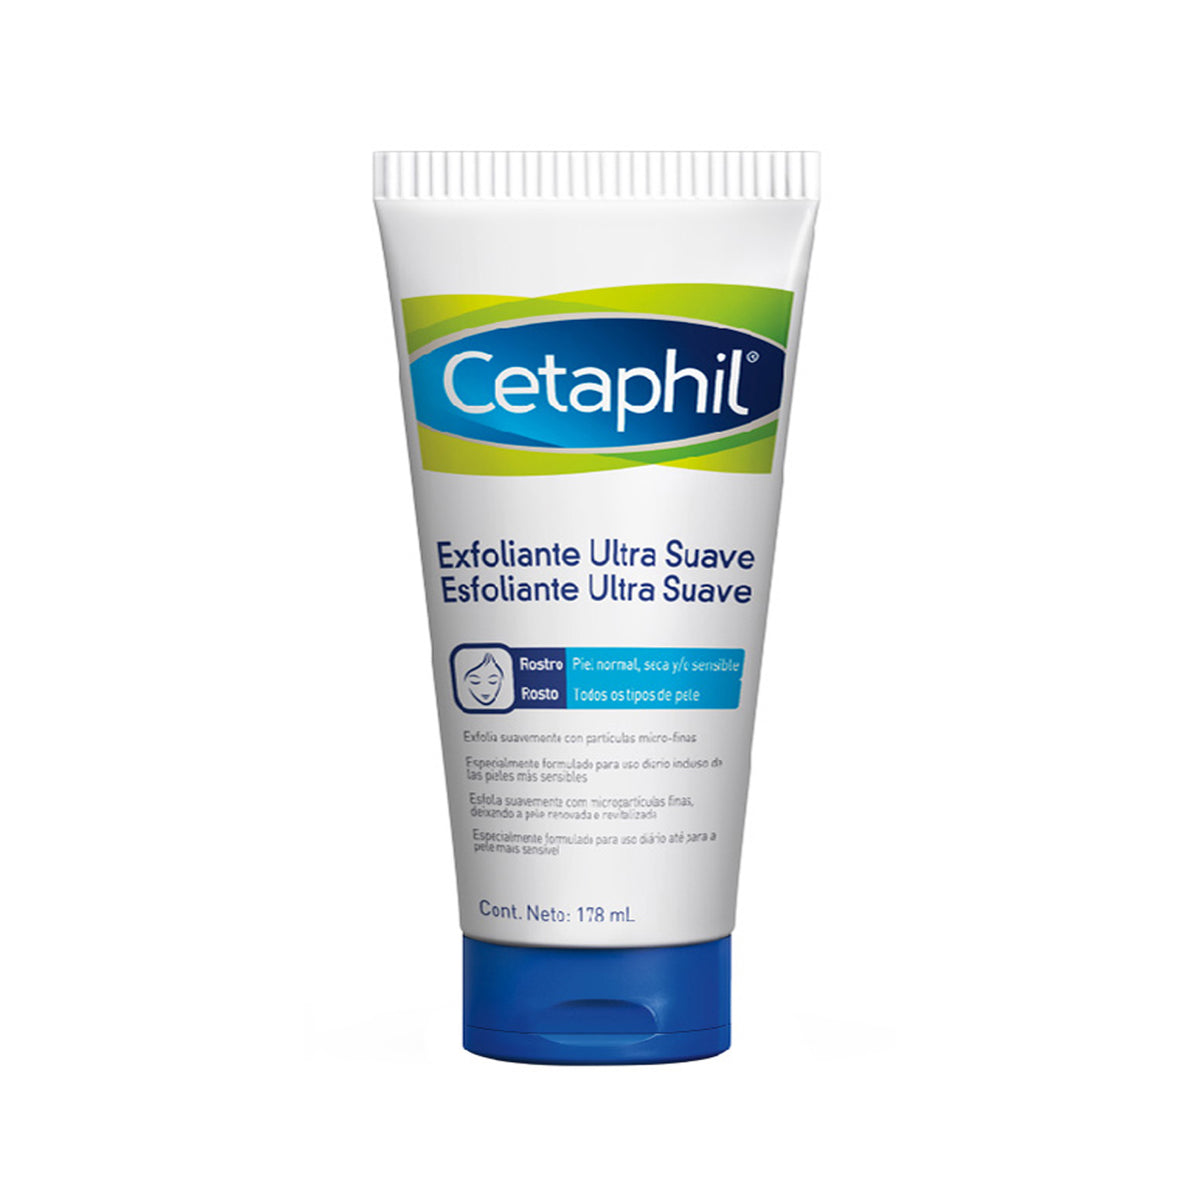 Cetaphil Exfoliante Ultra Suave